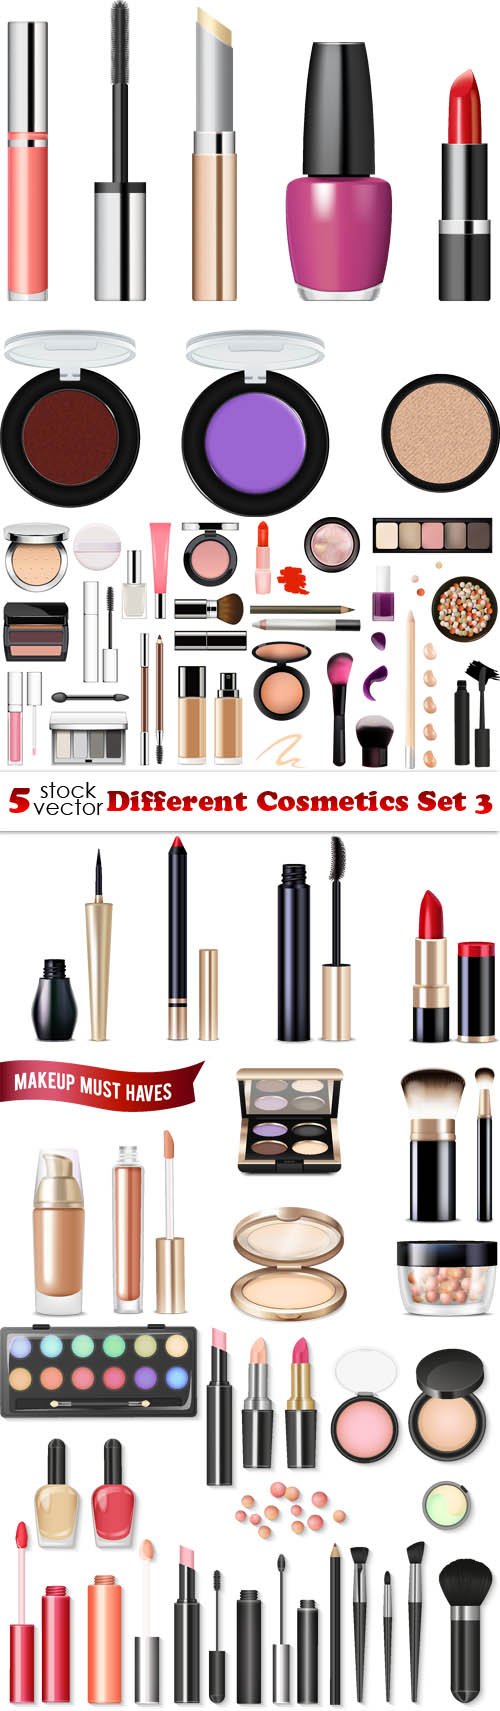 Vectors - Different Cosmetics Set 3